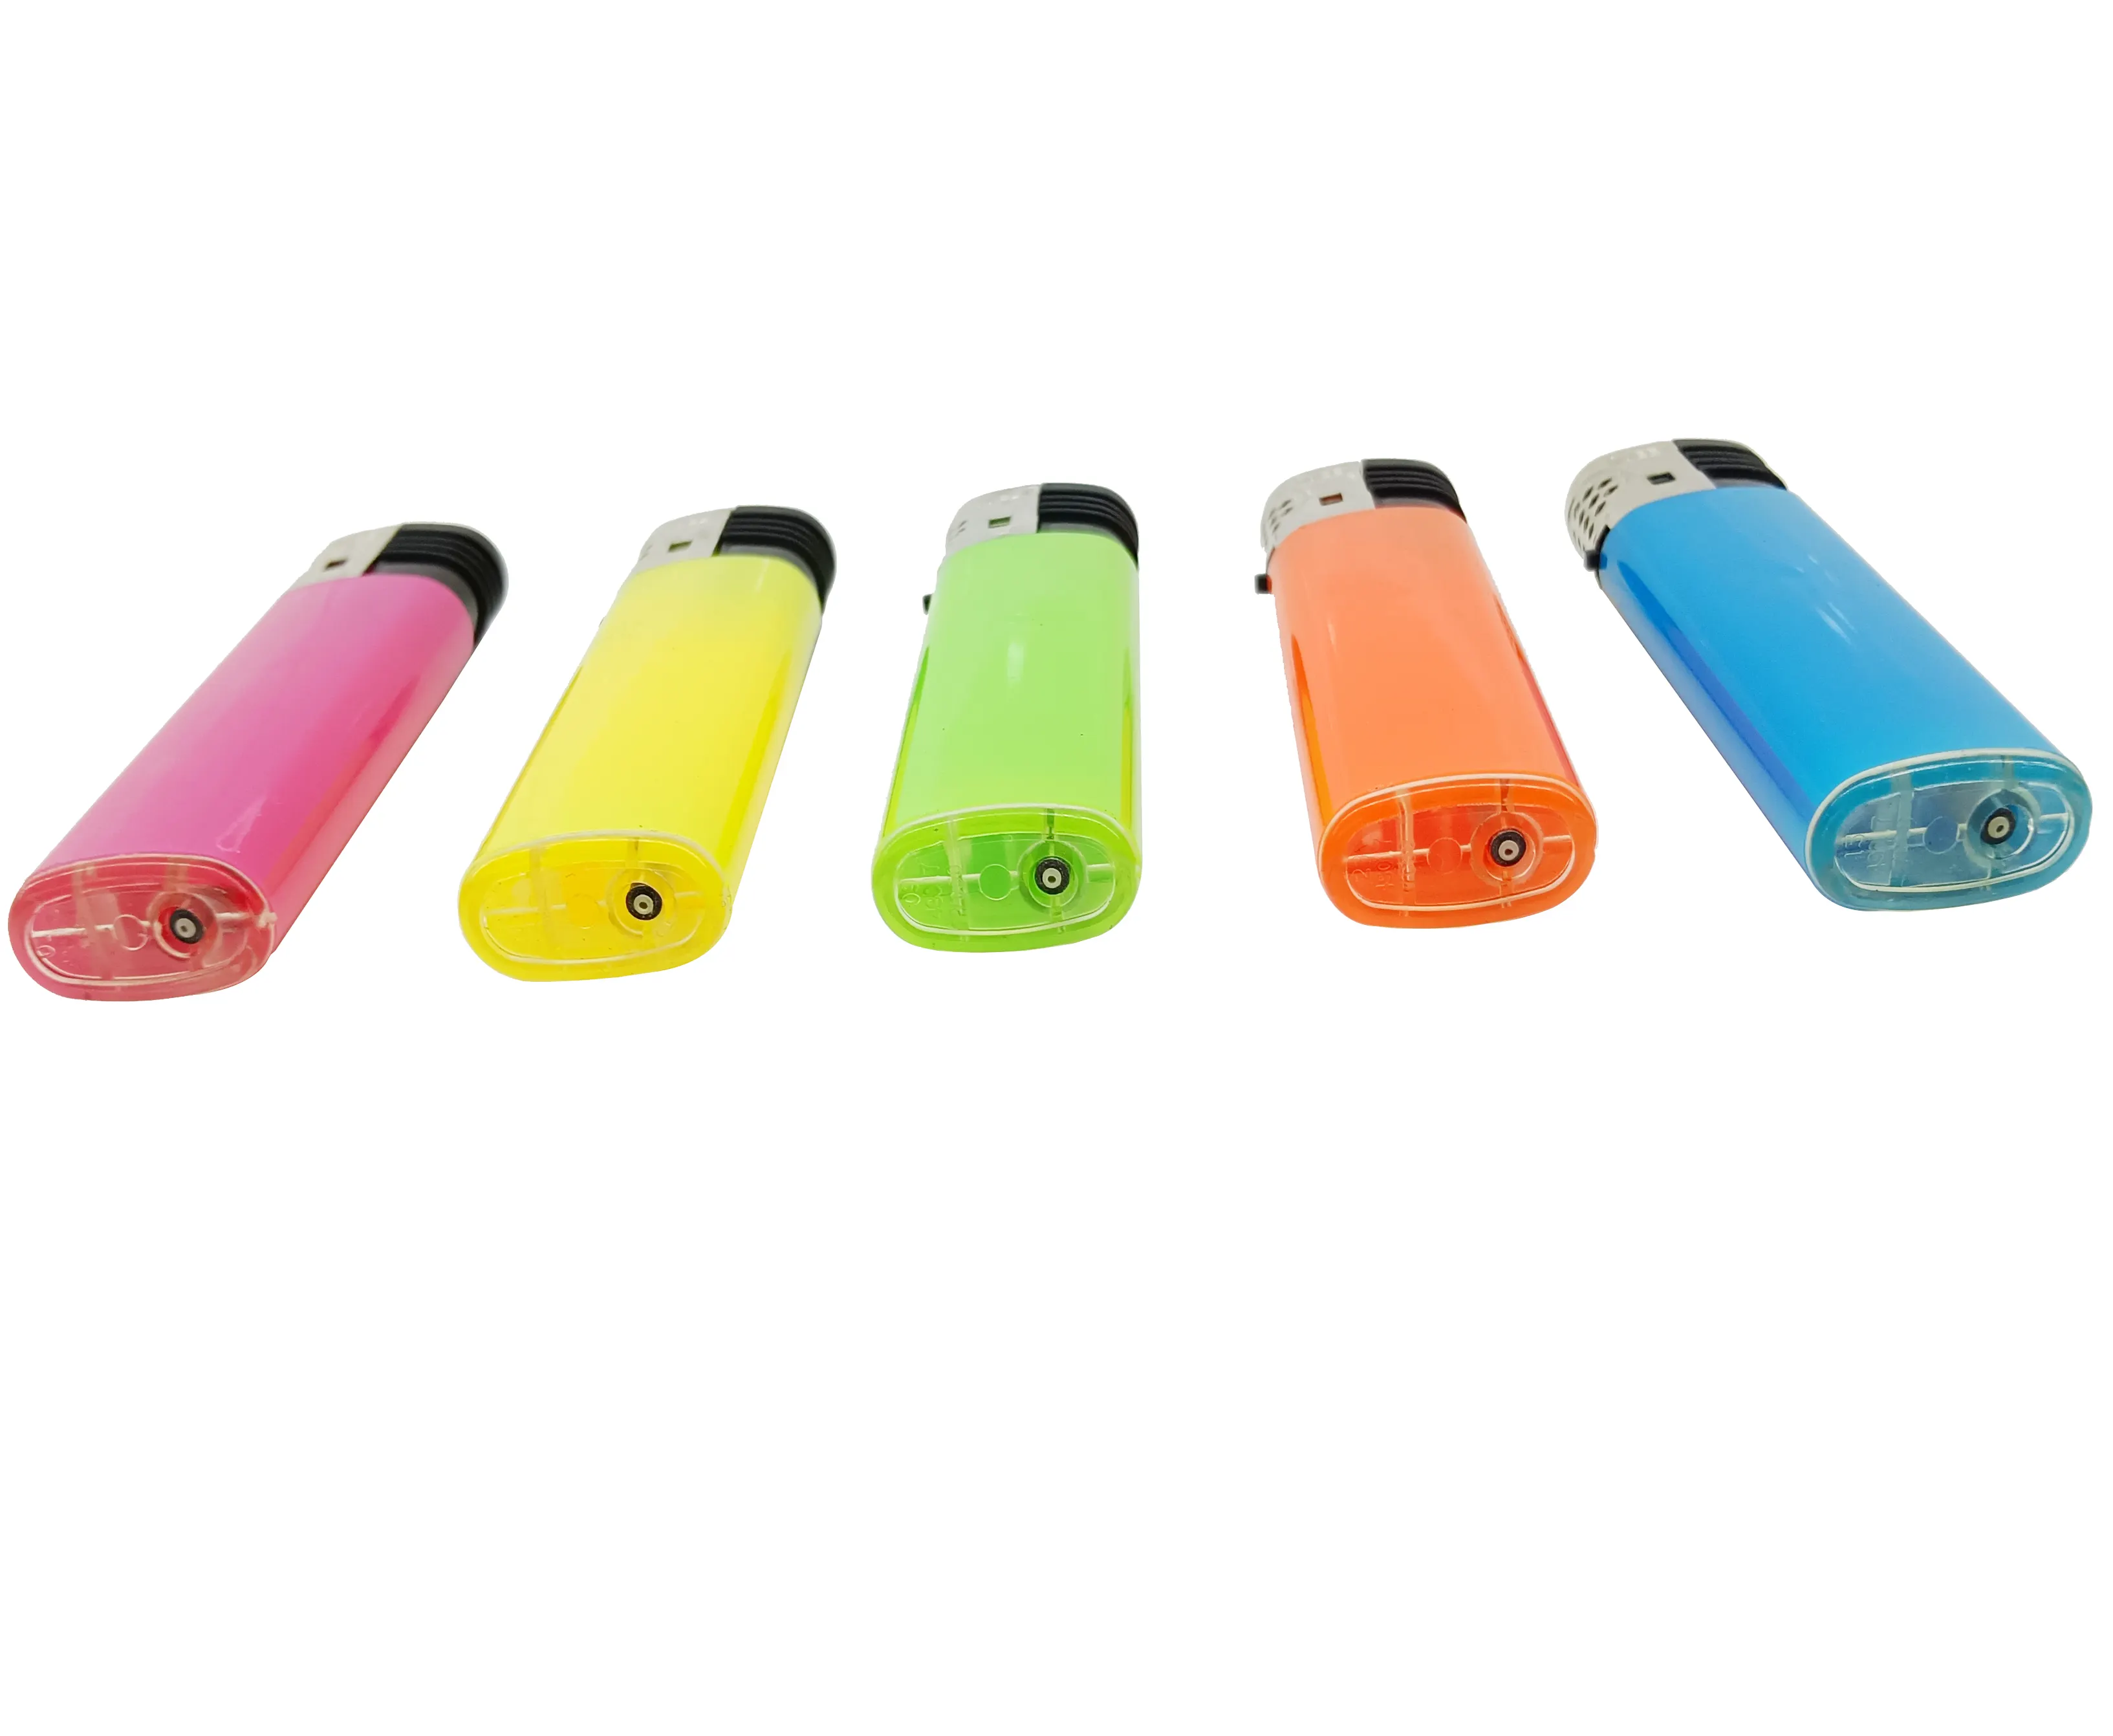 Mehrfarbig angepasste LOGO Feuerzeuge Zigarette Elektro feuerzeug wiederauf ladbar für Raucher